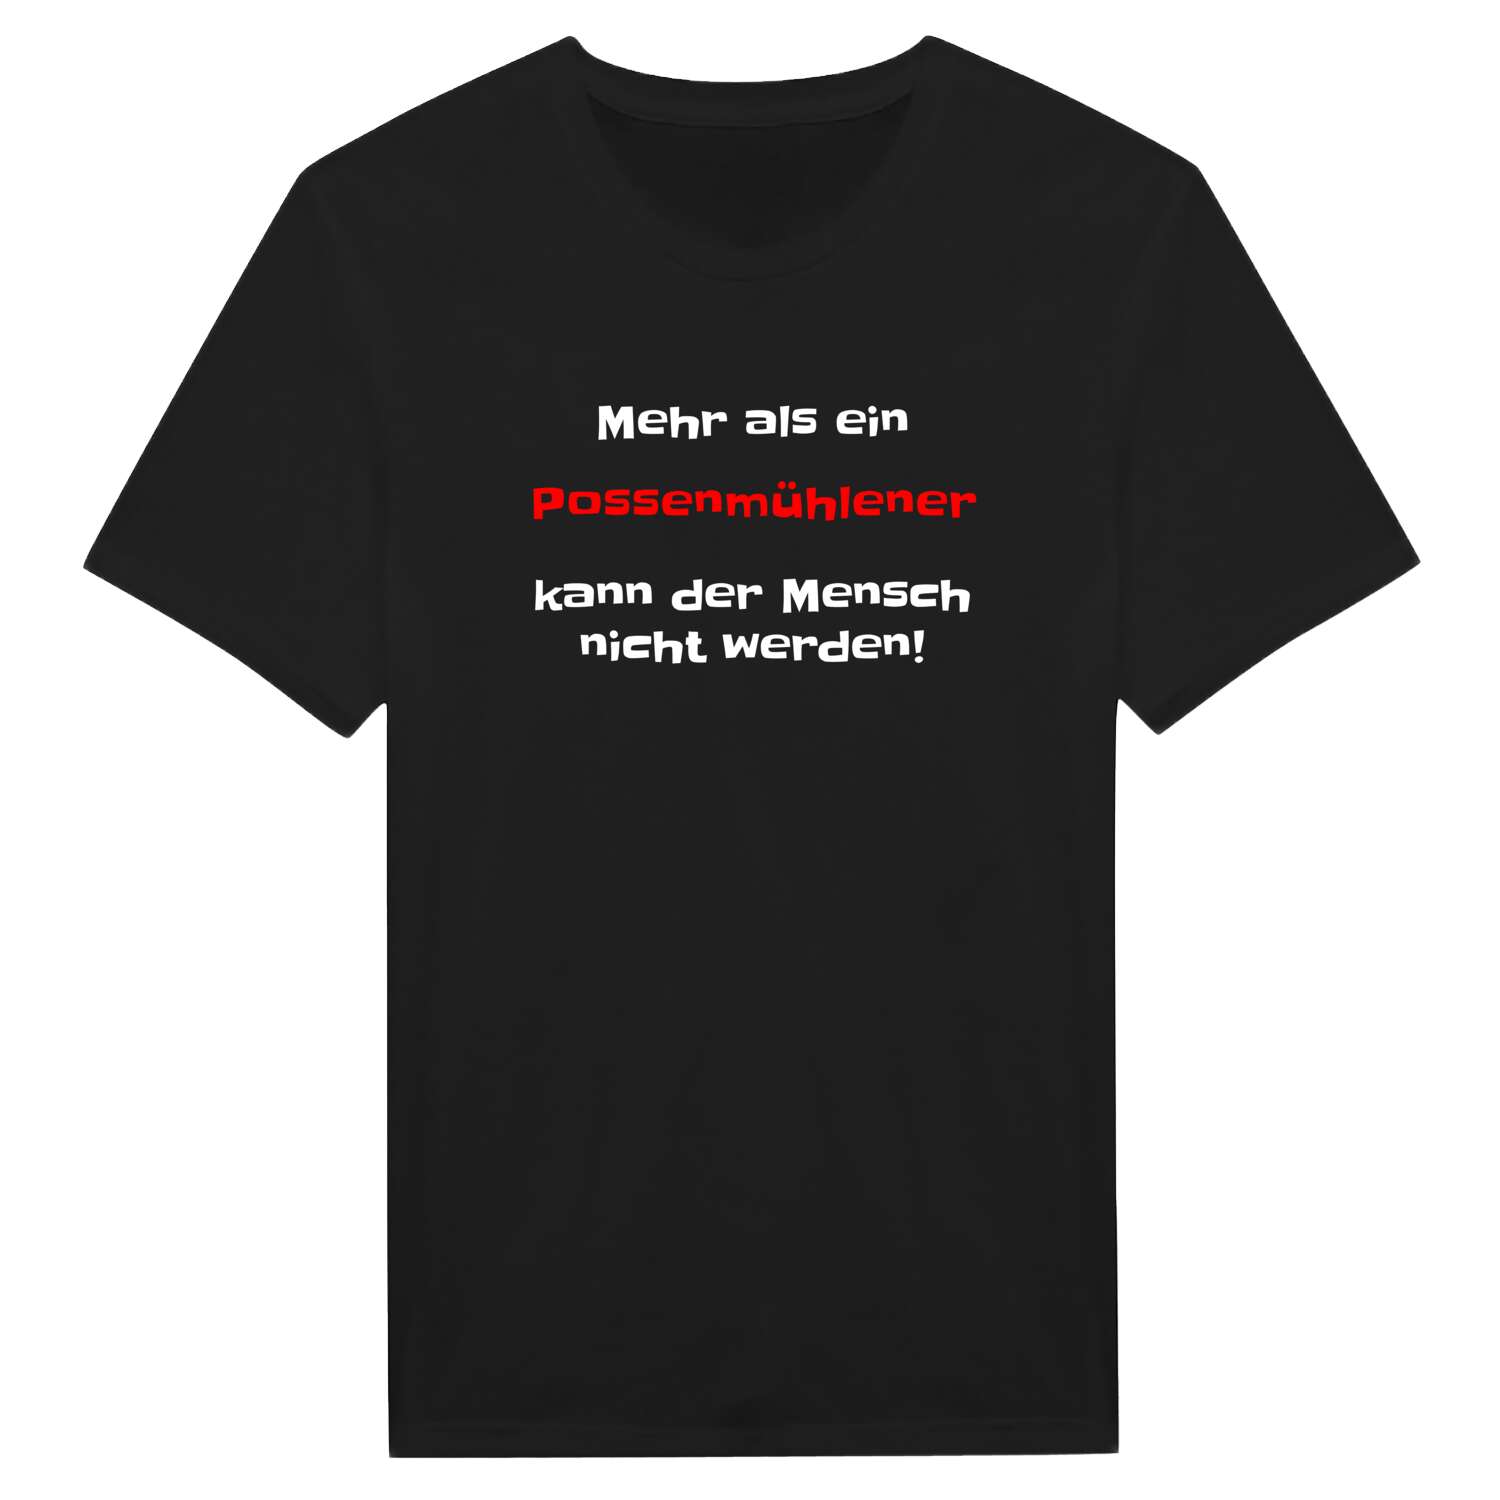 Possenmühle T-Shirt »Mehr als ein«